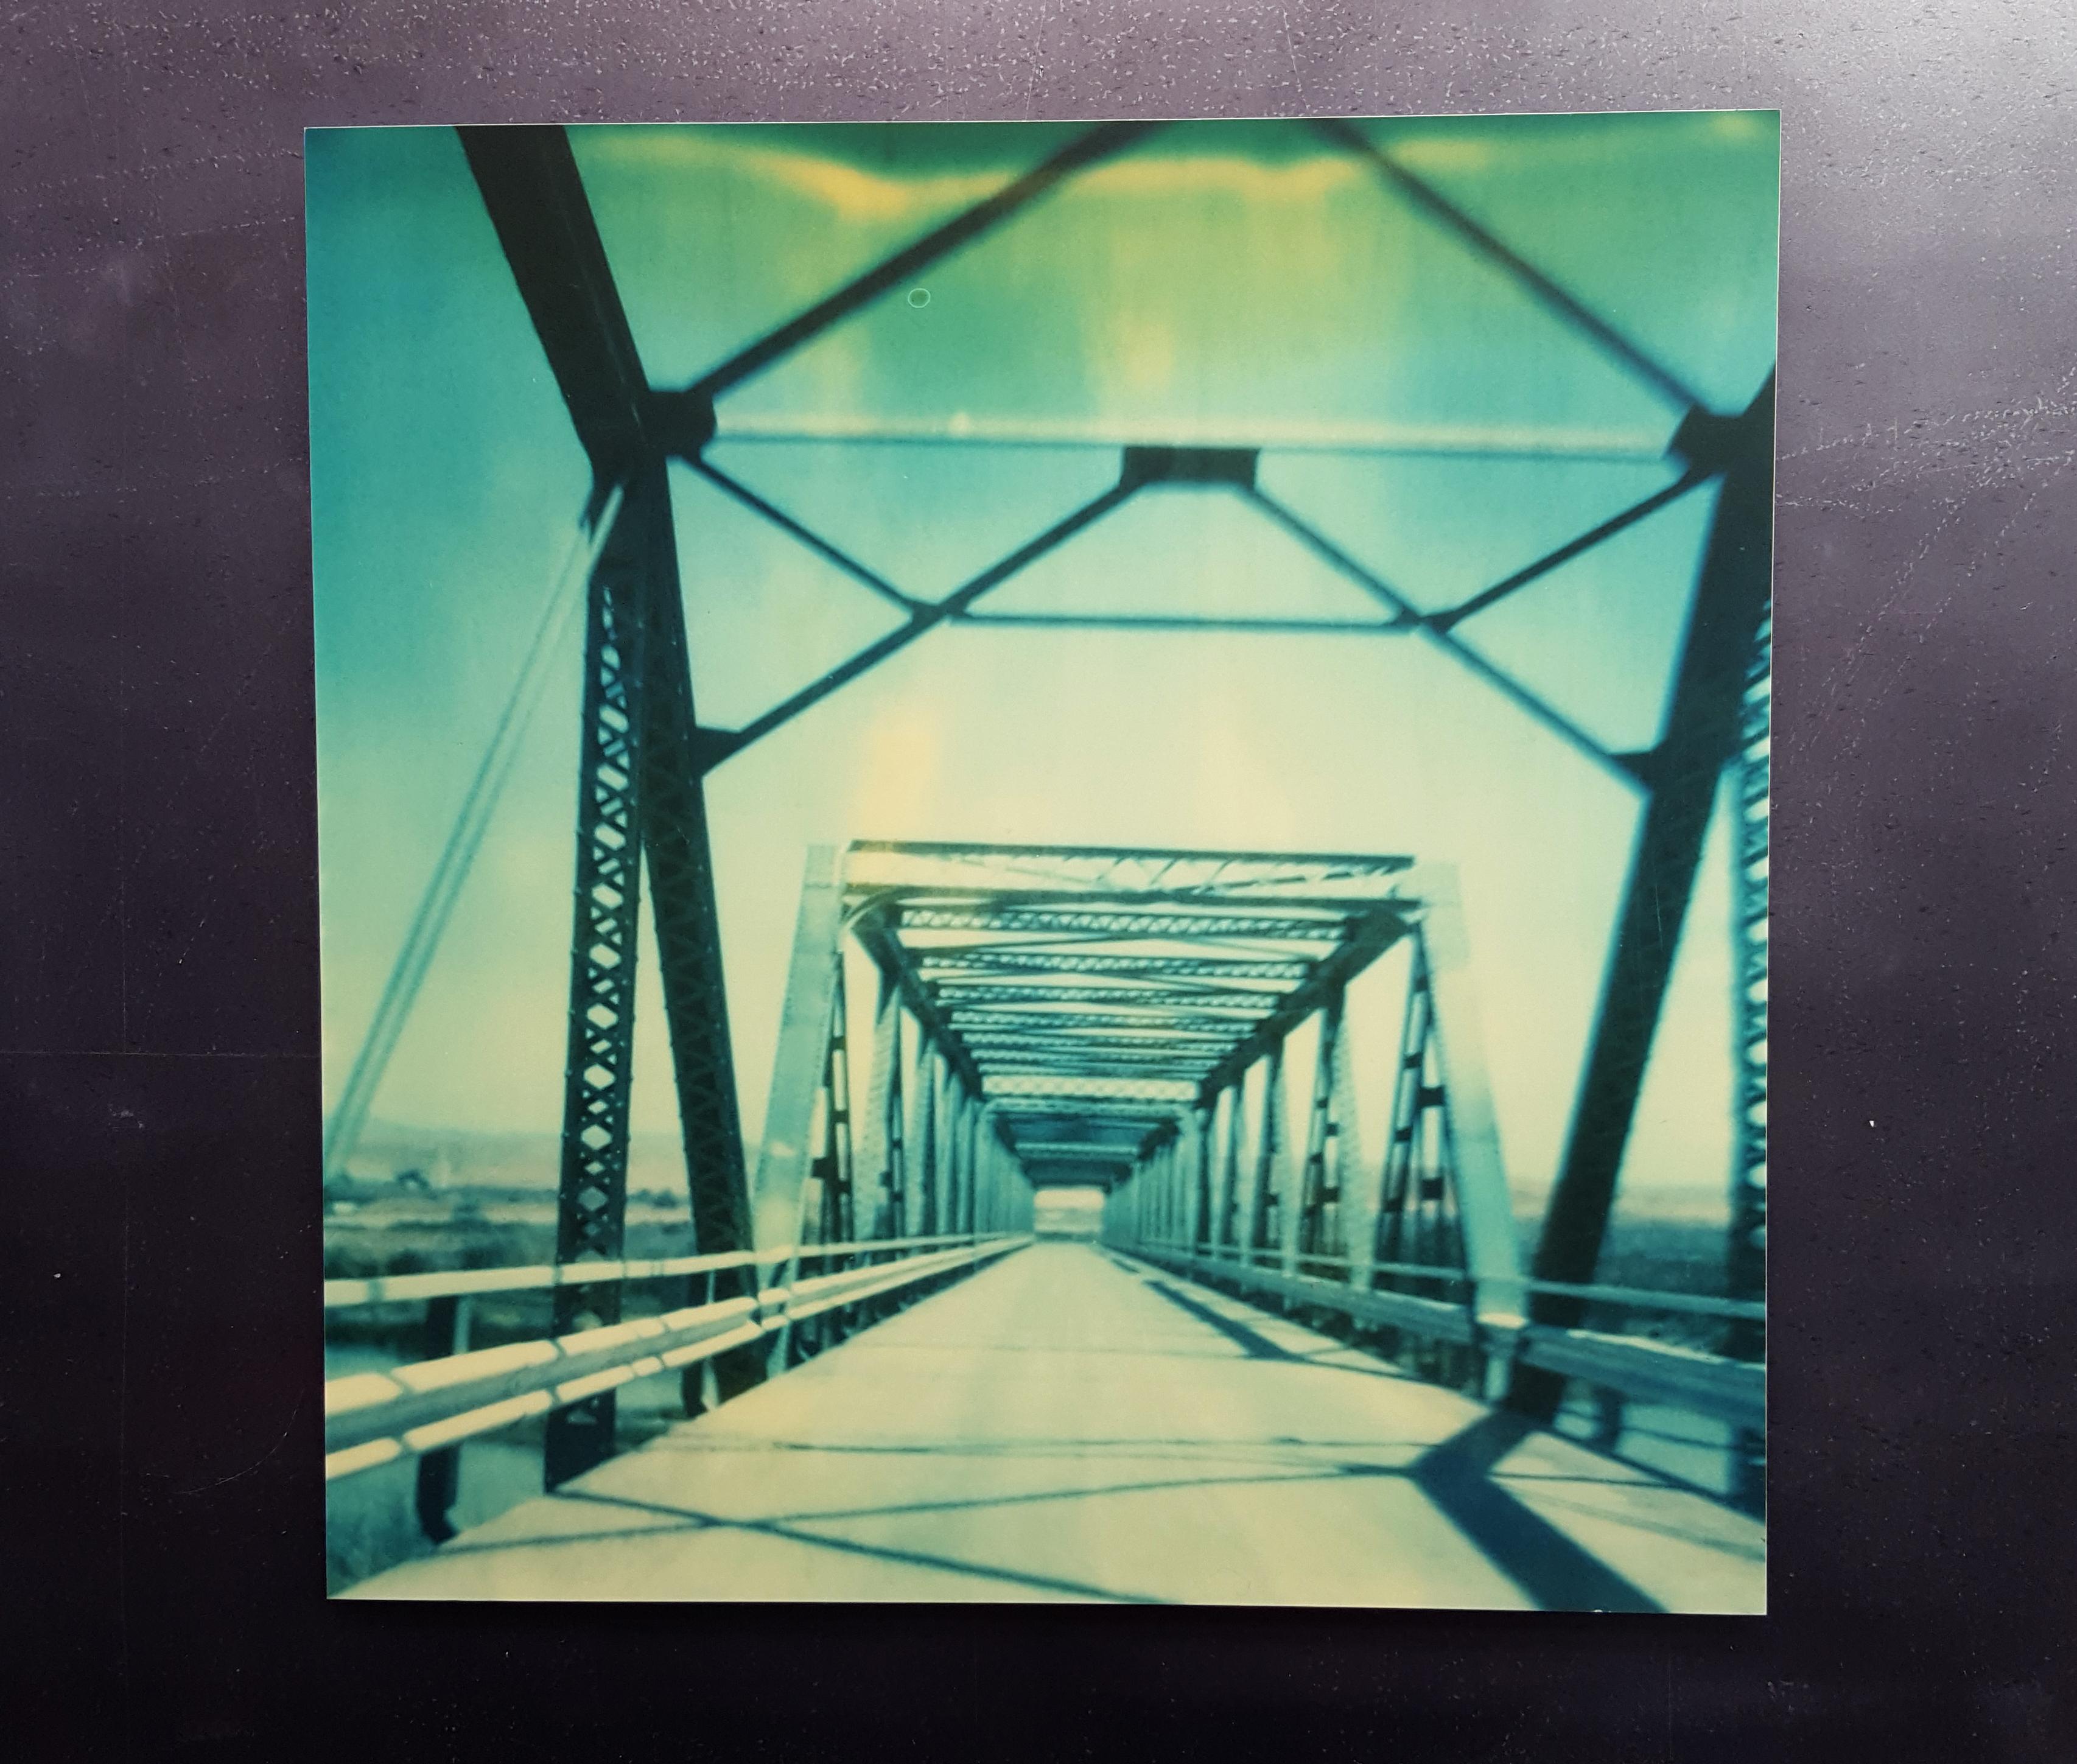 Blaue Brücke - Analog, montiert, Vintage, Contemporary, Landschaft, Polaroid, Farbe – Photograph von Stefanie Schneider